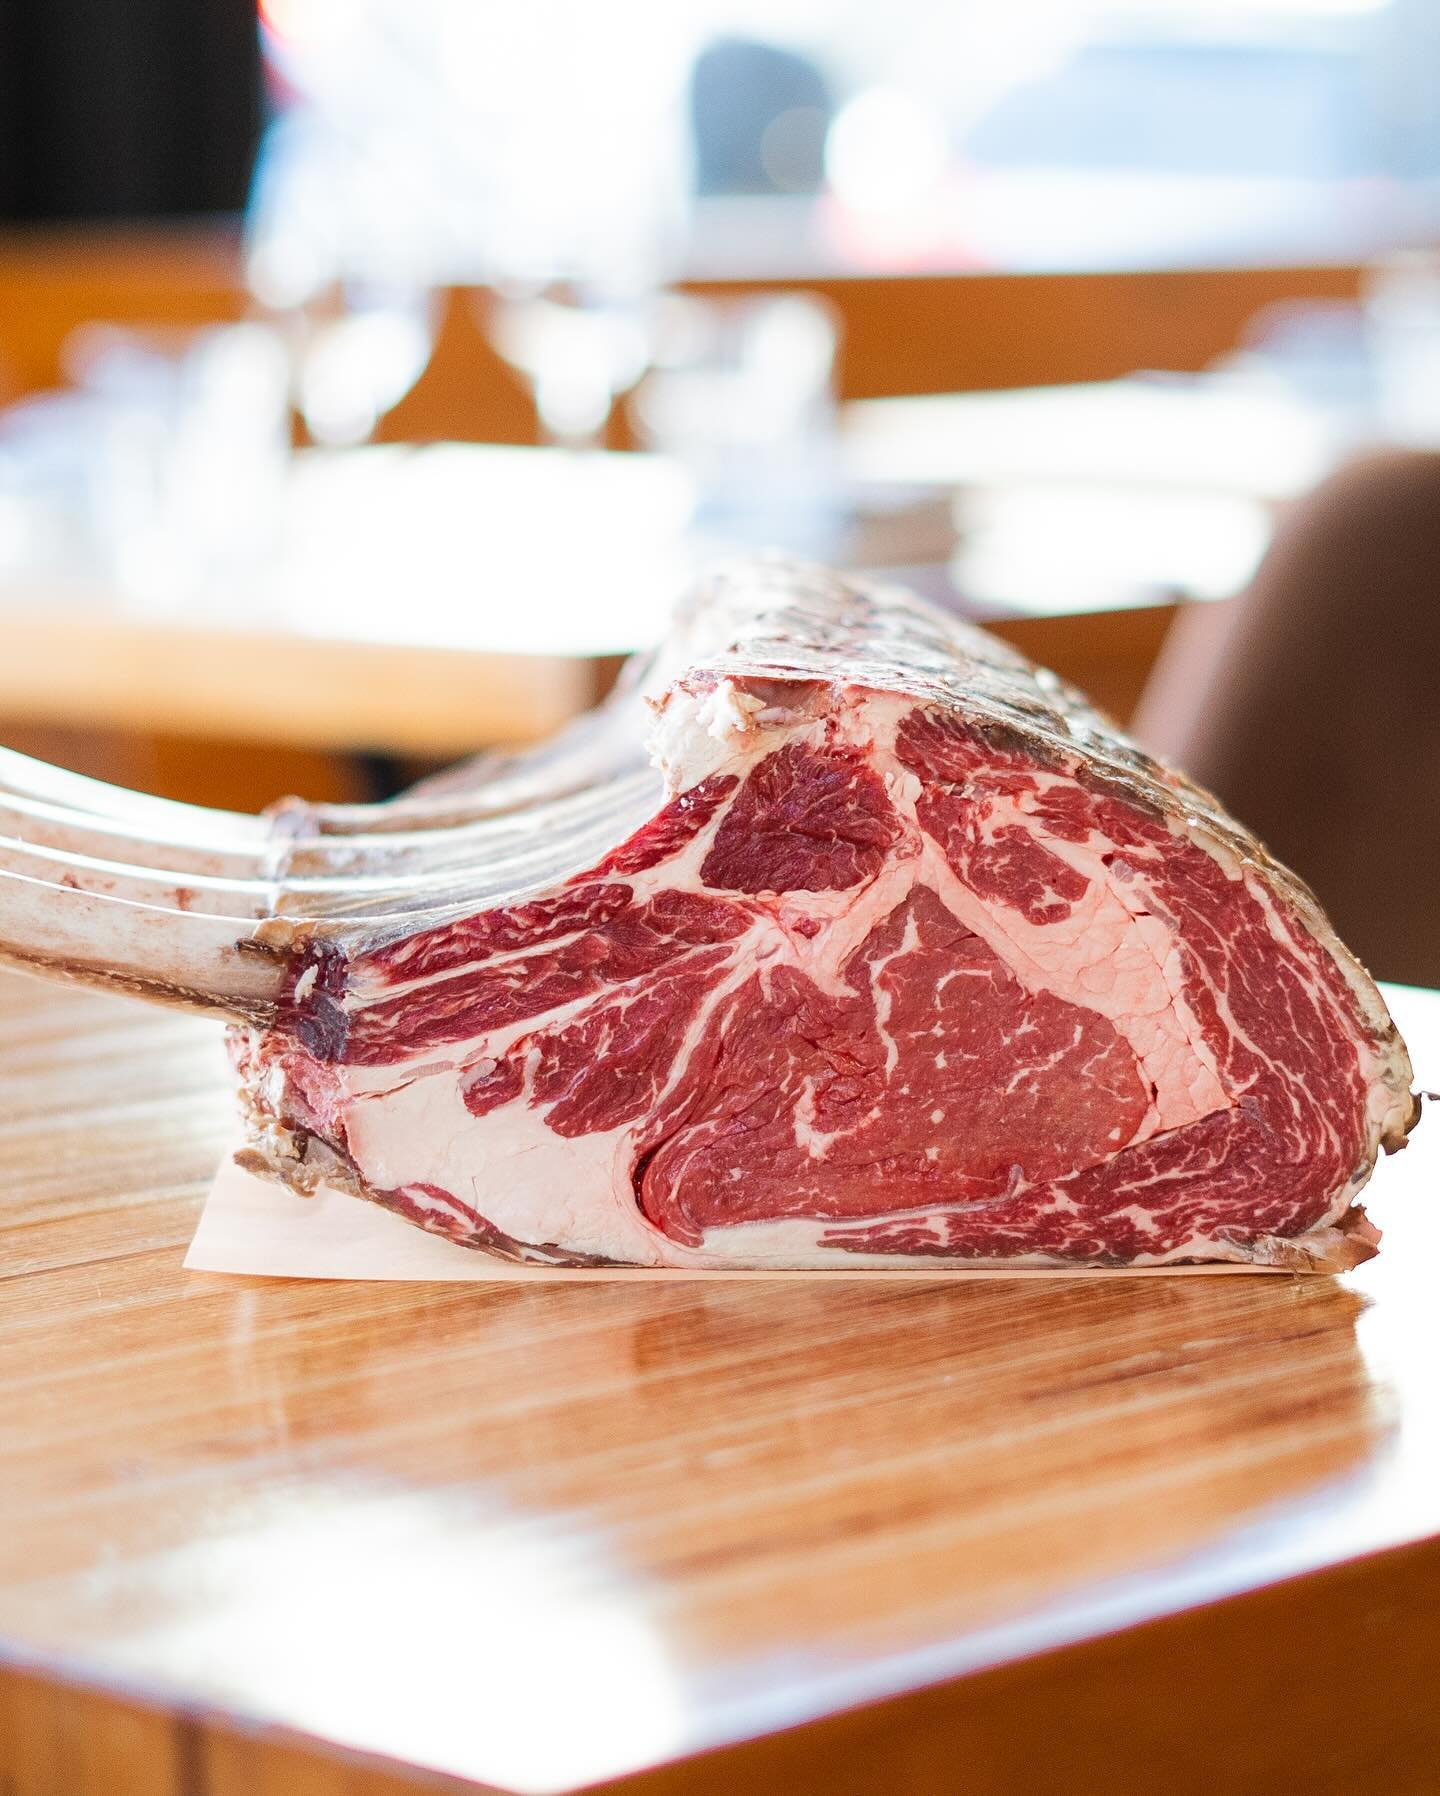 Tomahawk 🪓
Le choix parfait pour accompagner vos barbecues avec audace !

#steak #tomahawk #bbq #boucherie #butcher